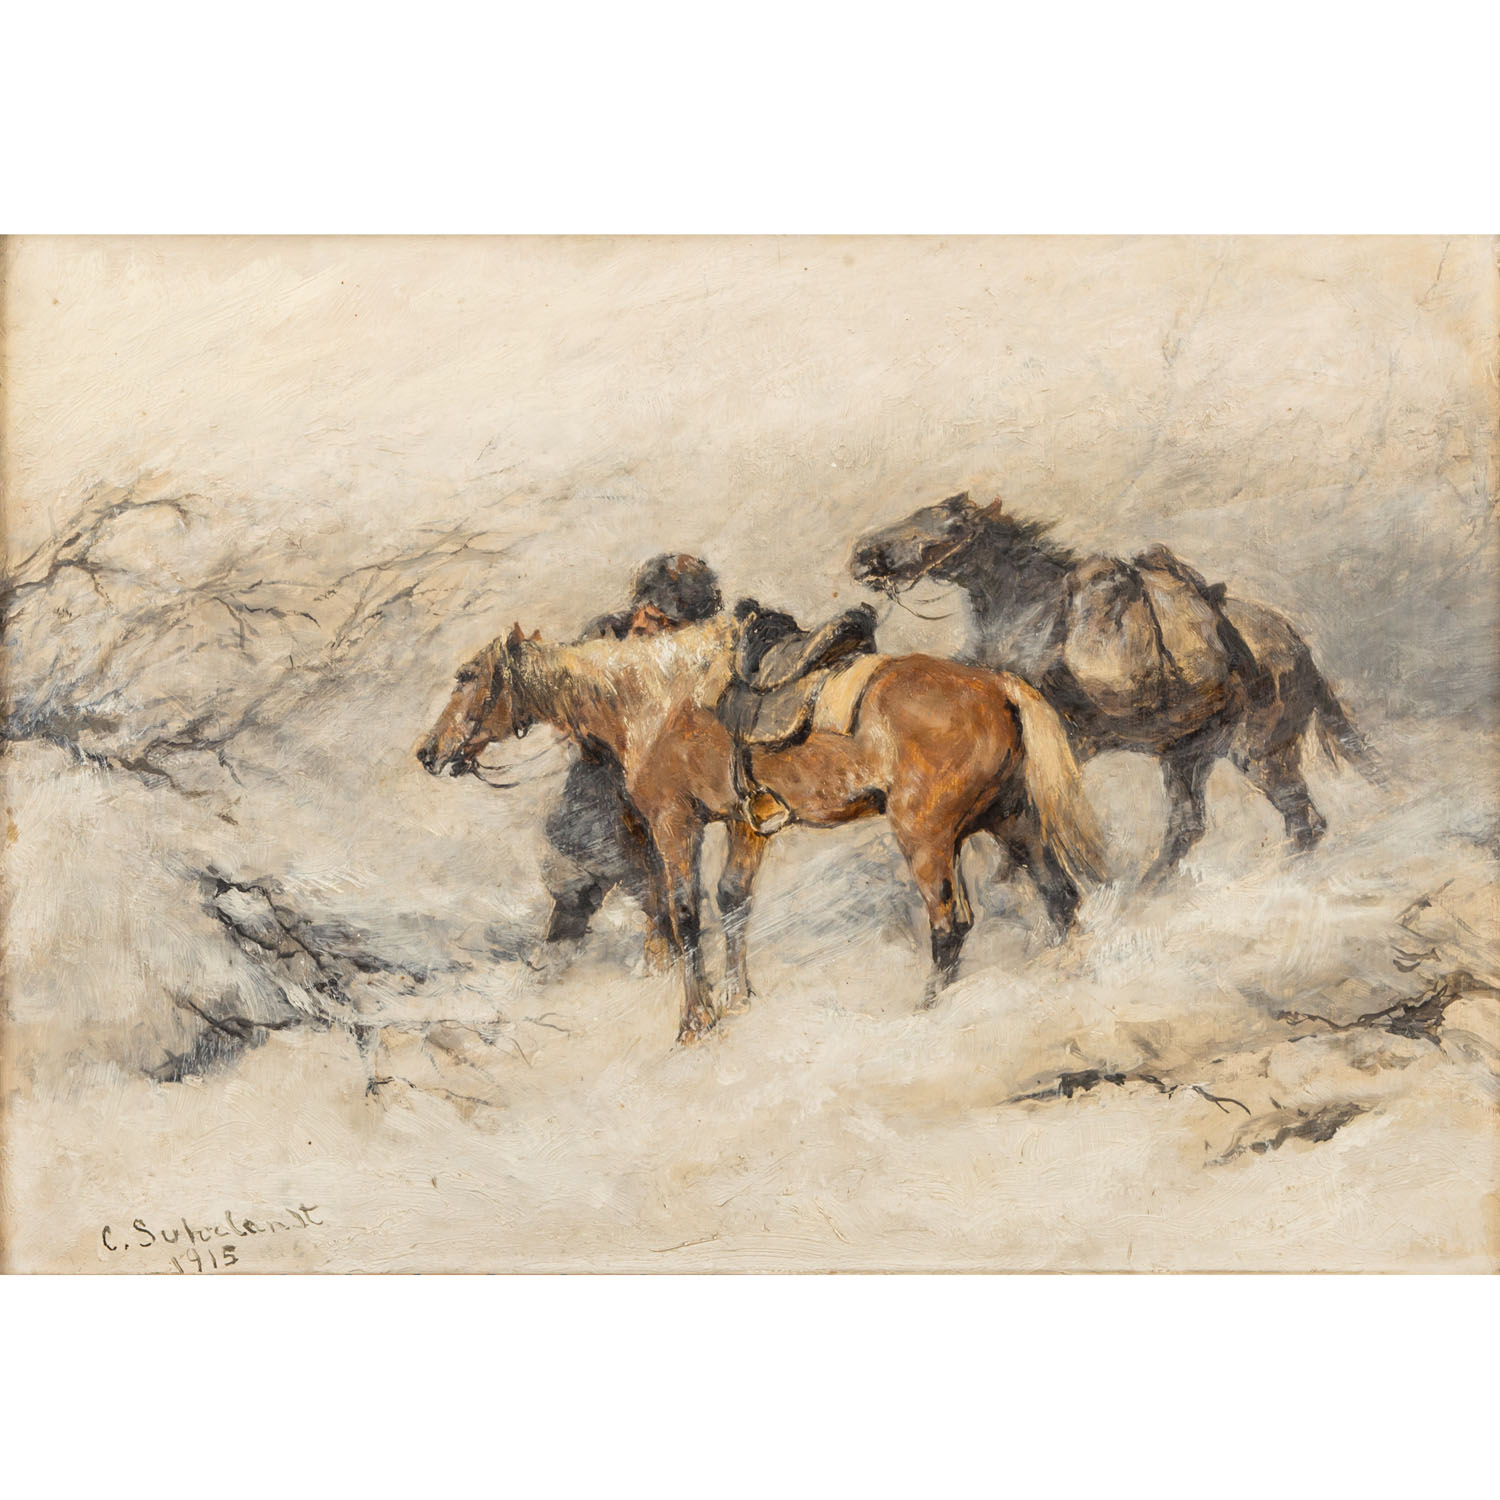 SUHRLANDT, CARL (1828-1919), "Soldat mit Pferden in winterlicher Landschaft "Öl auf Karton, signiert